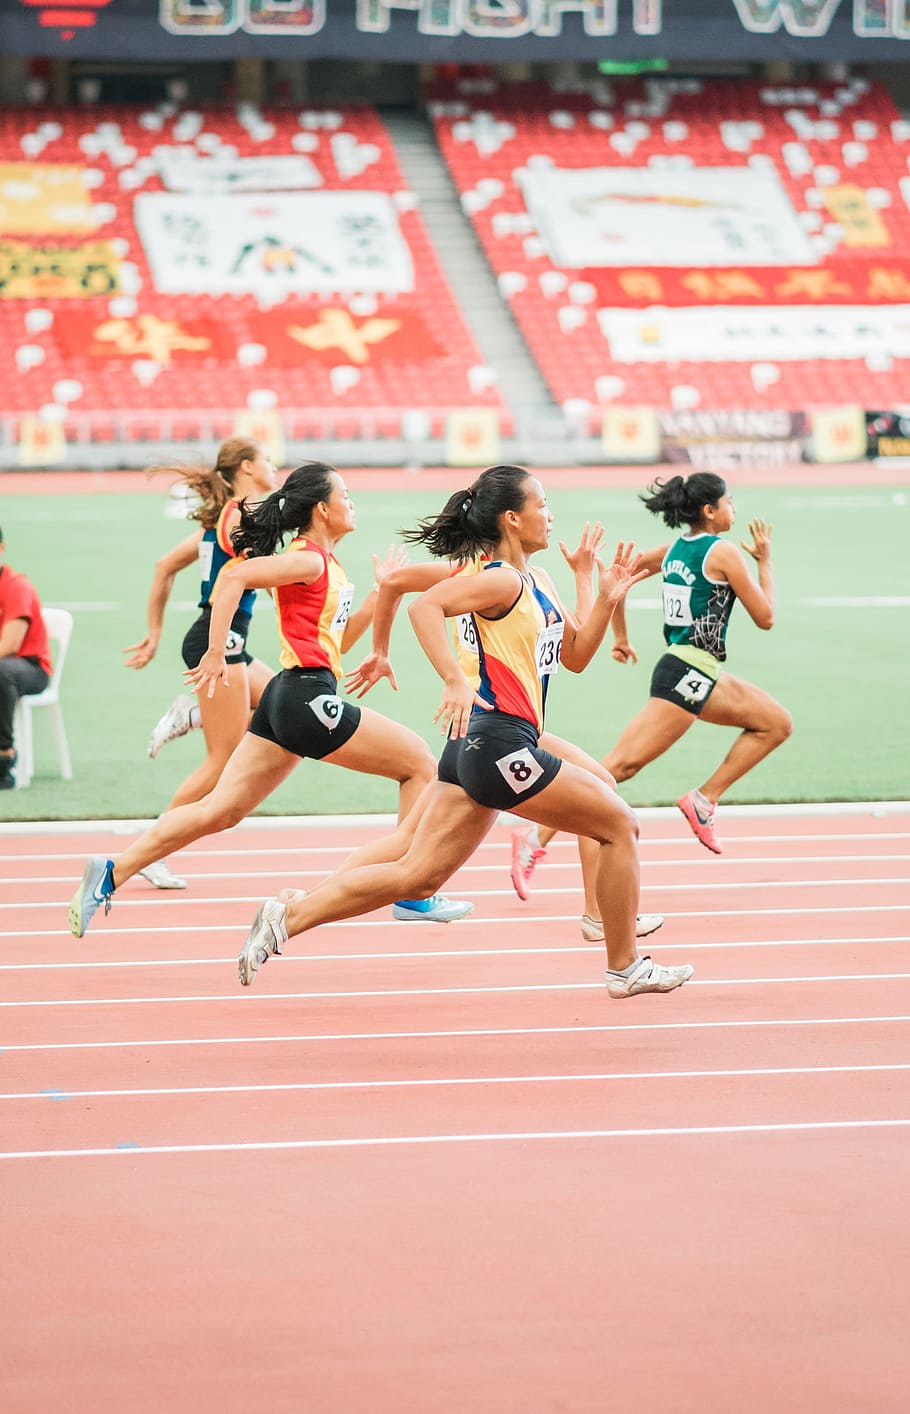 HD wallpaper: women running on track field, bleachers, school